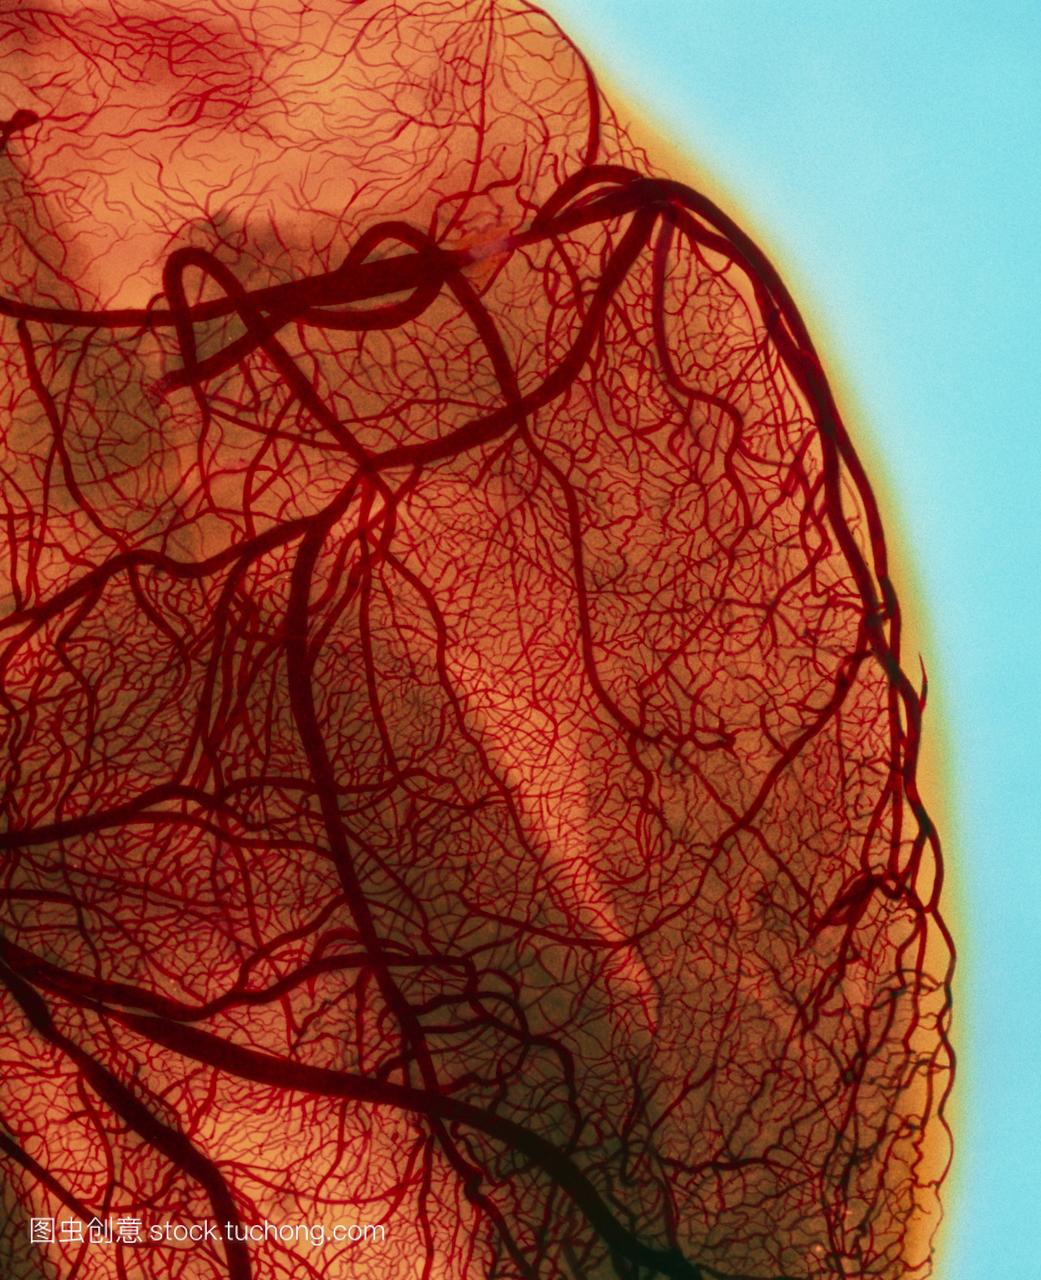 心脏血管造影显示冠状动脉狭窄阻塞,动脉是血